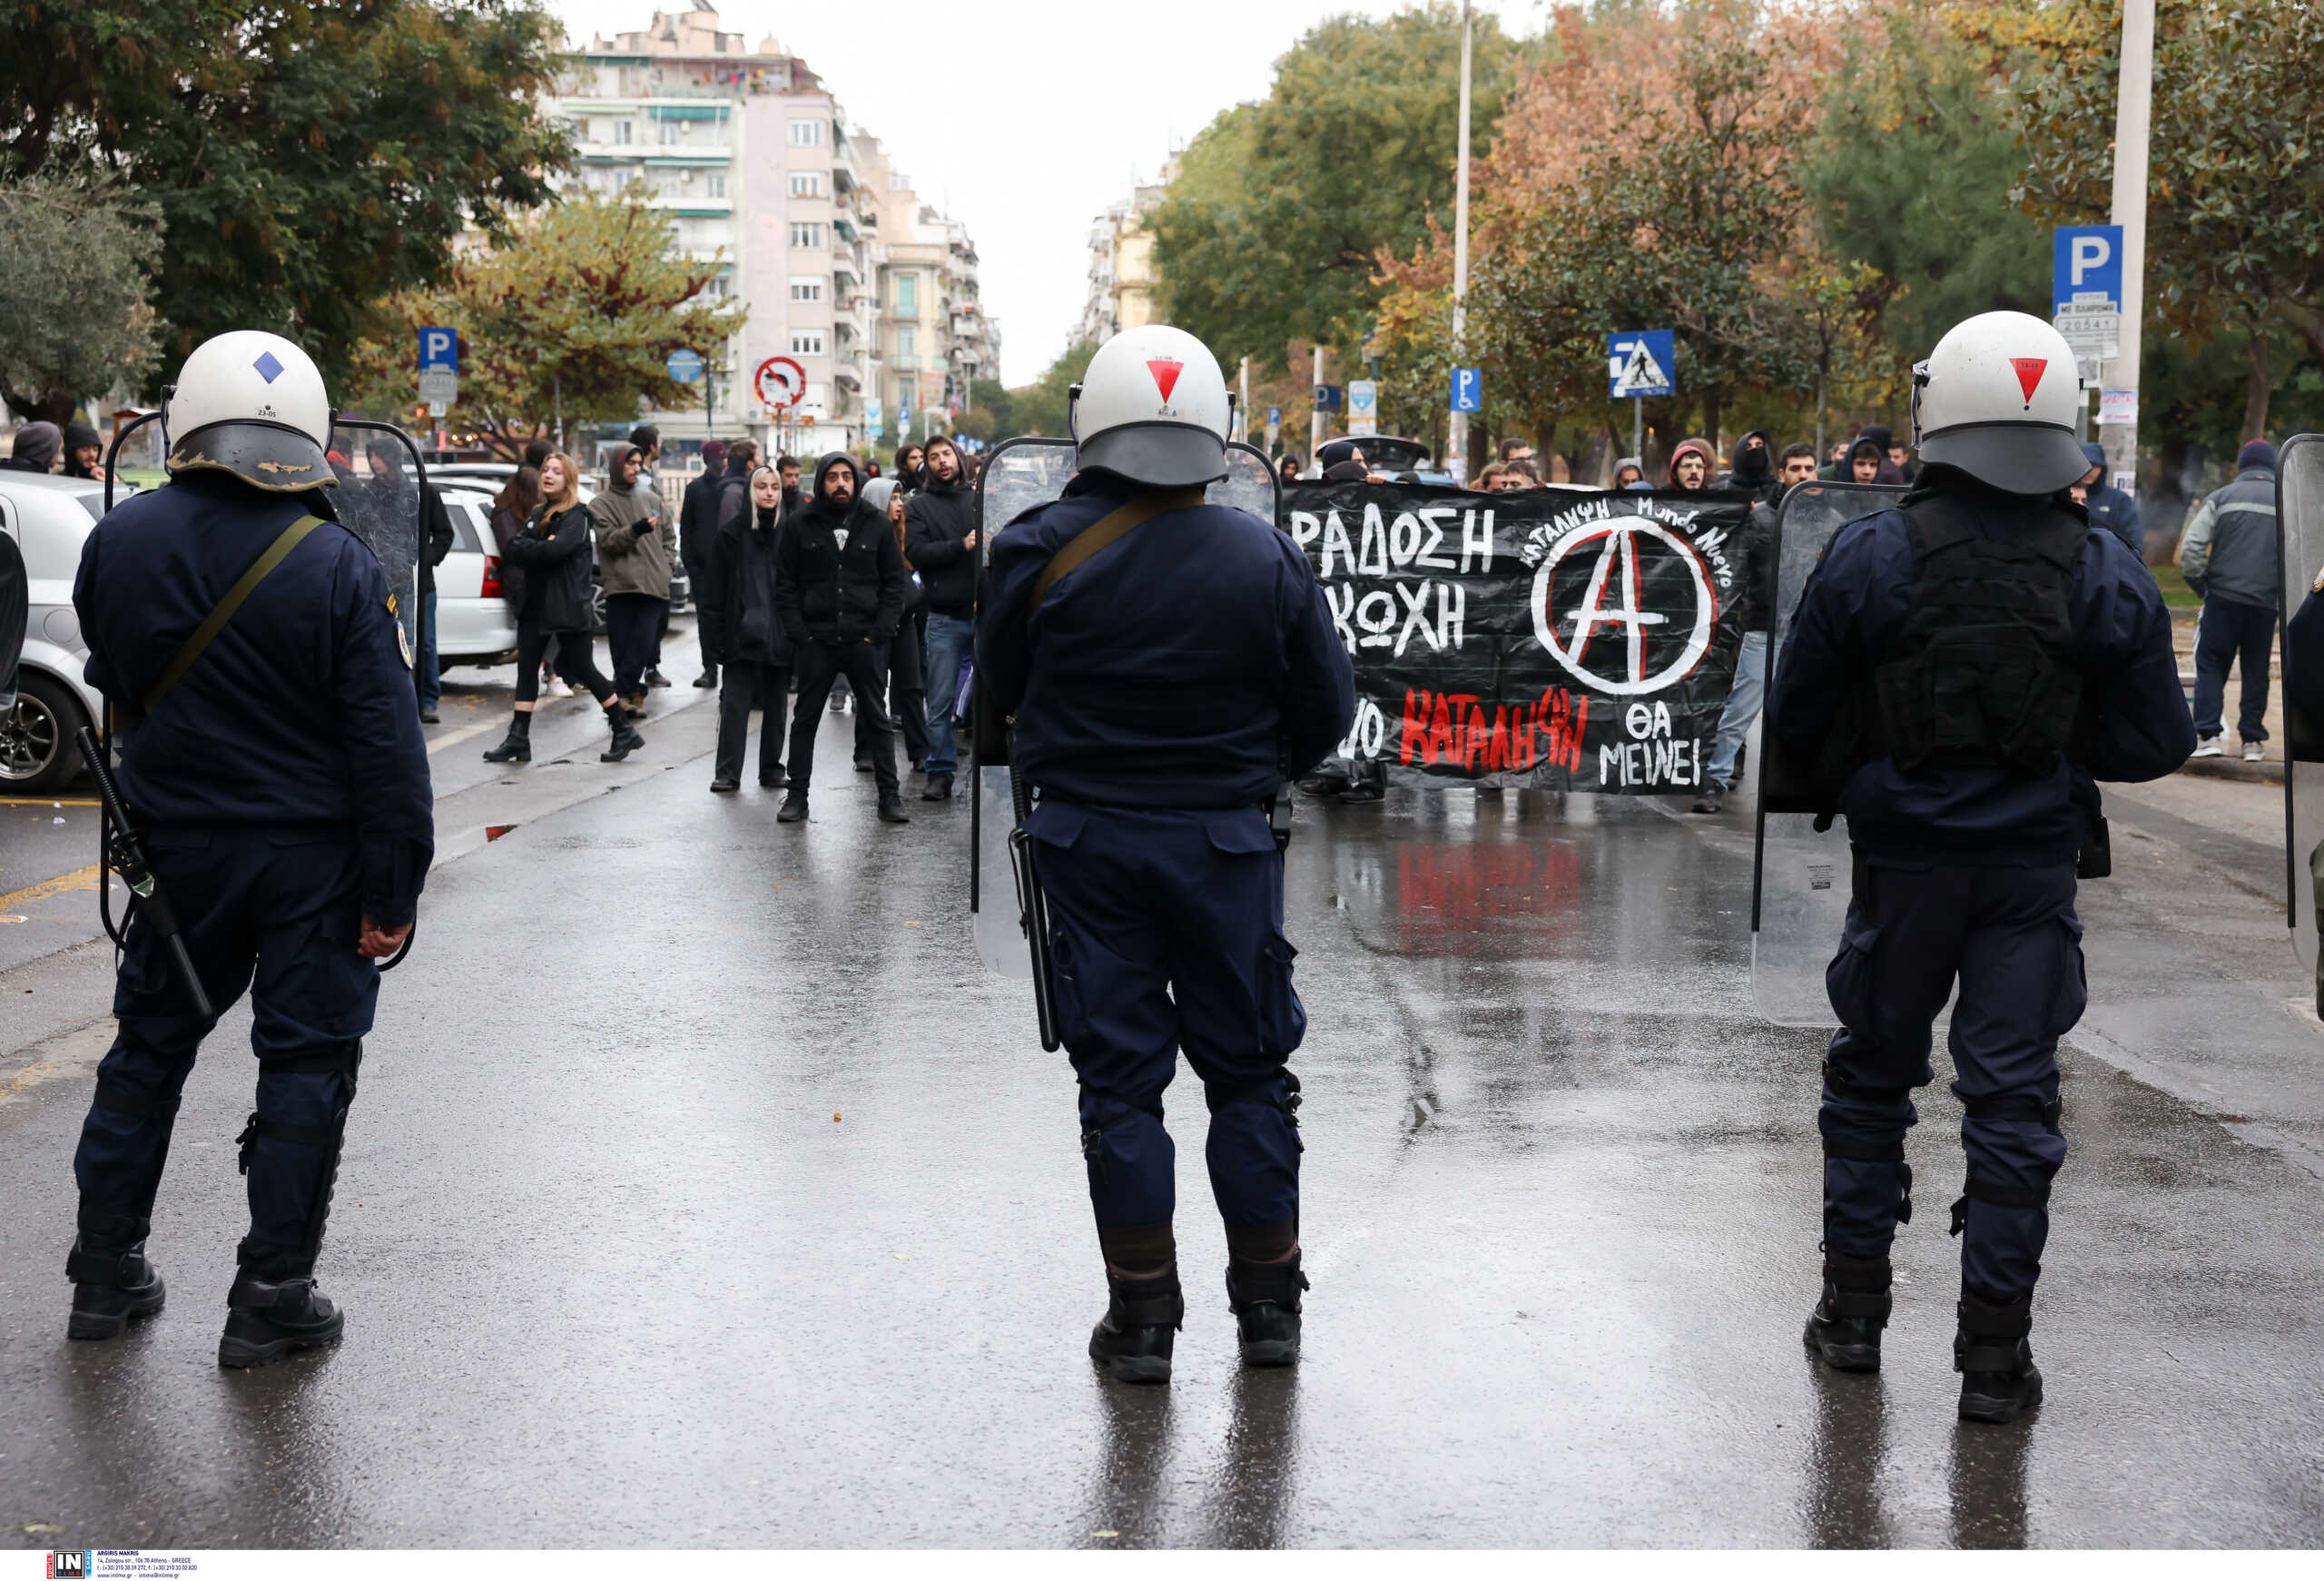 Θεσσαλονίκη: 4 συλλήψεις και 4 προσαγωγές στην εκκένωση της κατάληψης στην Θέρμη